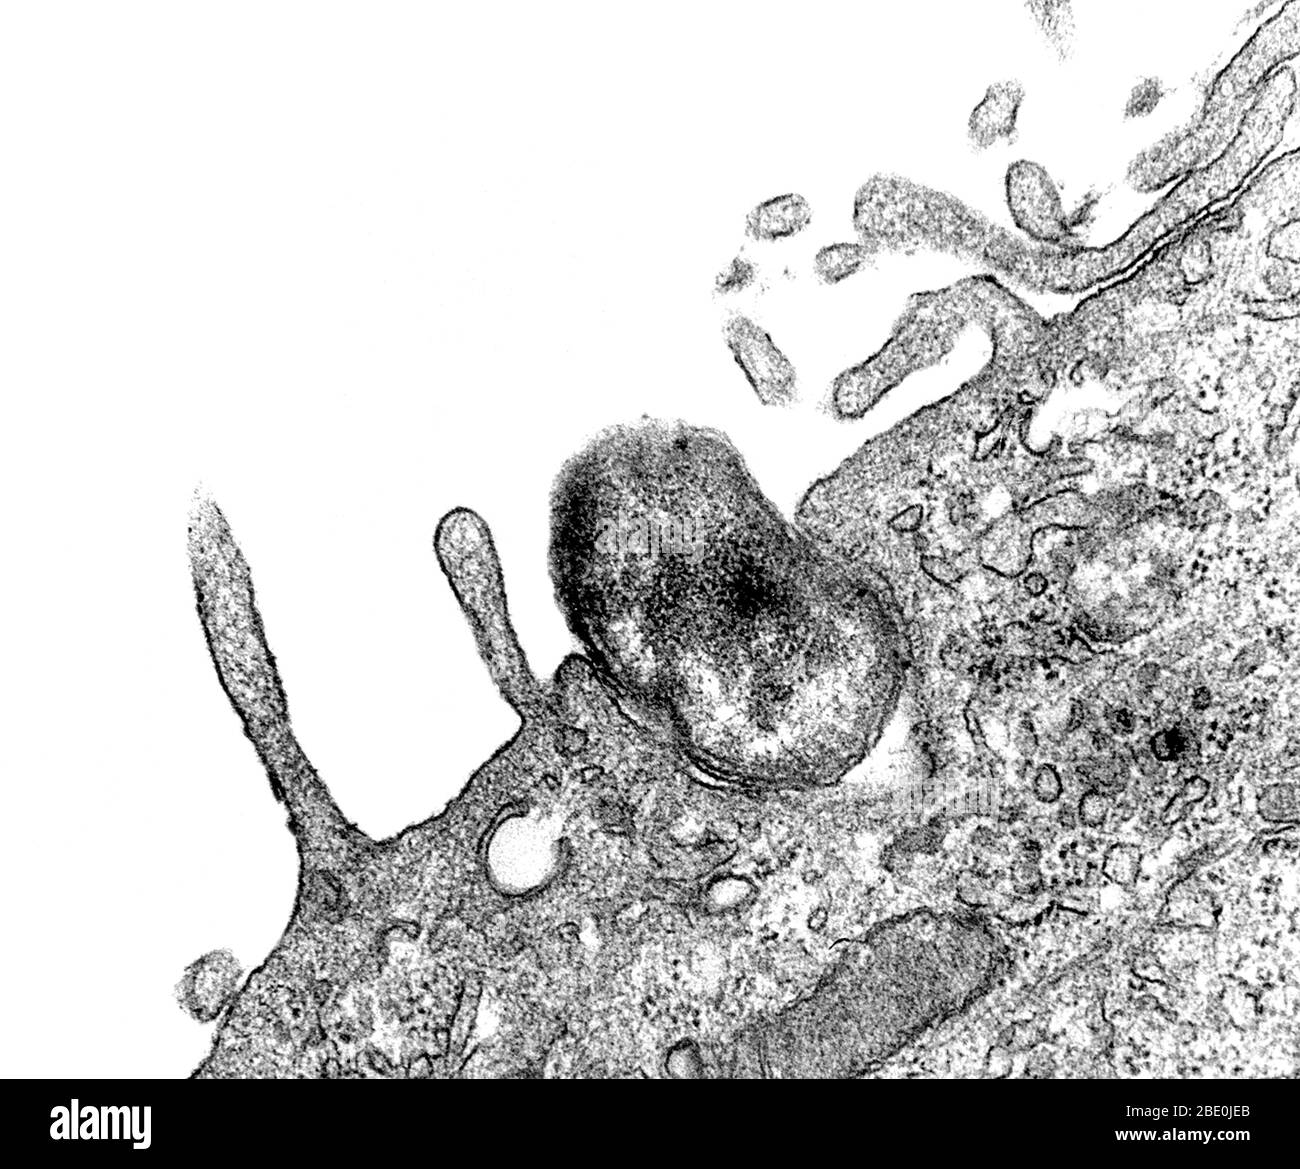 Transmission Electron Microscope (TEM) image capturée pendant le processus de phagocytose était en cours. Ici, vous pouvez voir comme une bactérie Orientia tsutsugamushi, anciennement appelée Rickettsia tsutsugamushi, était ingérée par une cellule mésothéliale péritonéale de souris. Notez comment la membrane cellulaire de l'hôte serait-elle n'avait pas encore entièrement enveloppé la bactérie. Agrandissement : inconnu. Banque D'Images